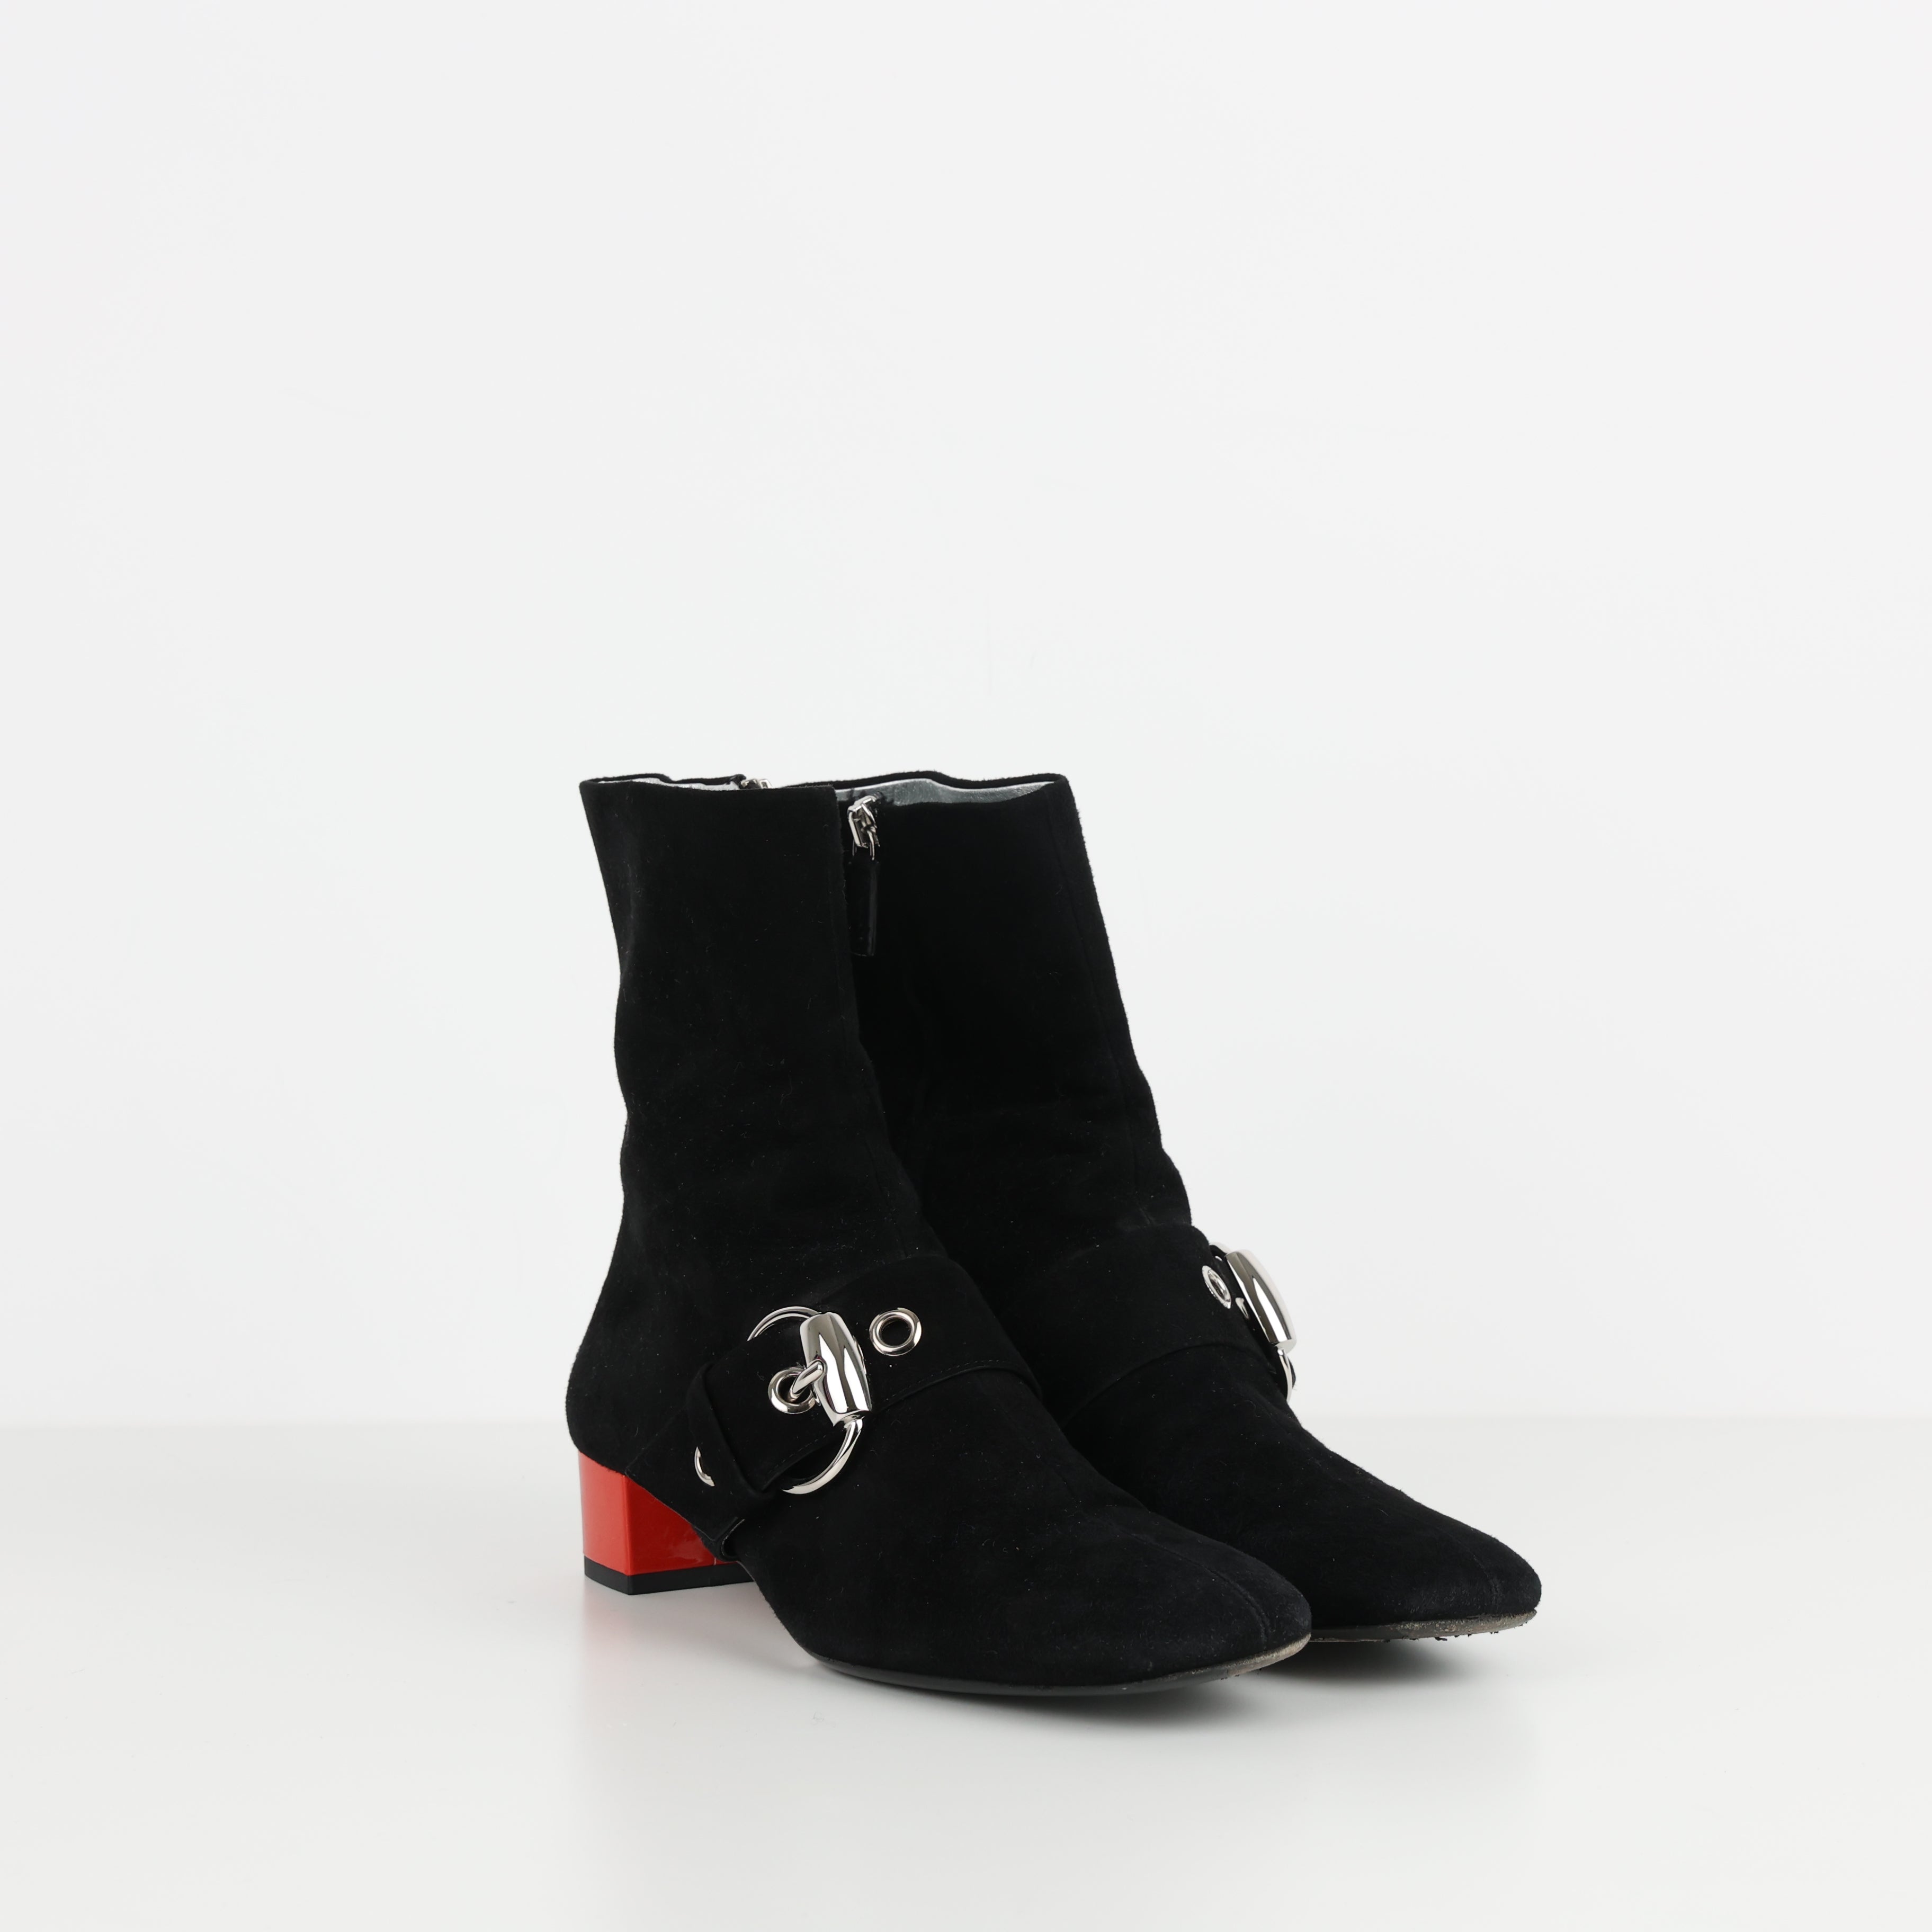 Boots , Shoe Size 37.5